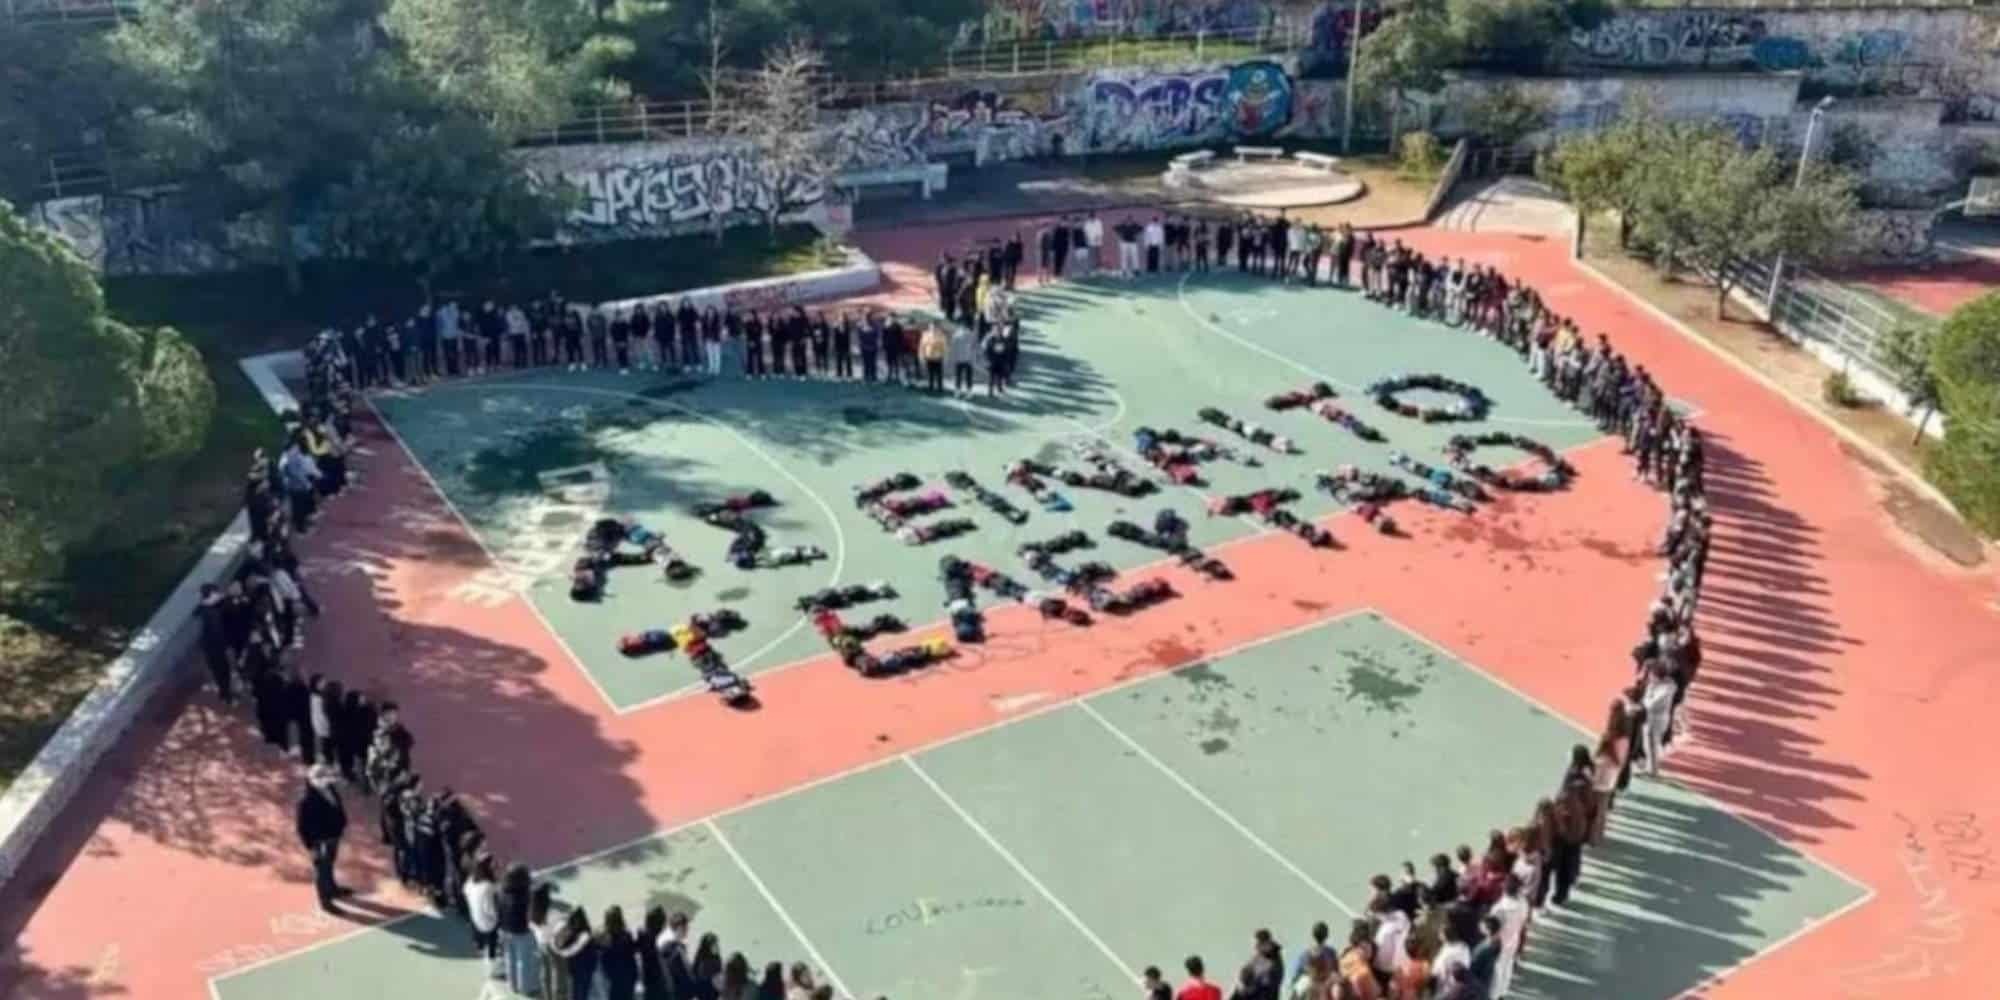 «Πάρε όταν φτάσεις»! Μαθητές σε Γυμνάσια και Λύκεια της χώρας στέλνουν το δικό τους μήνυμα μετά το δυστύχημα των Τεμπών (εικόνες)